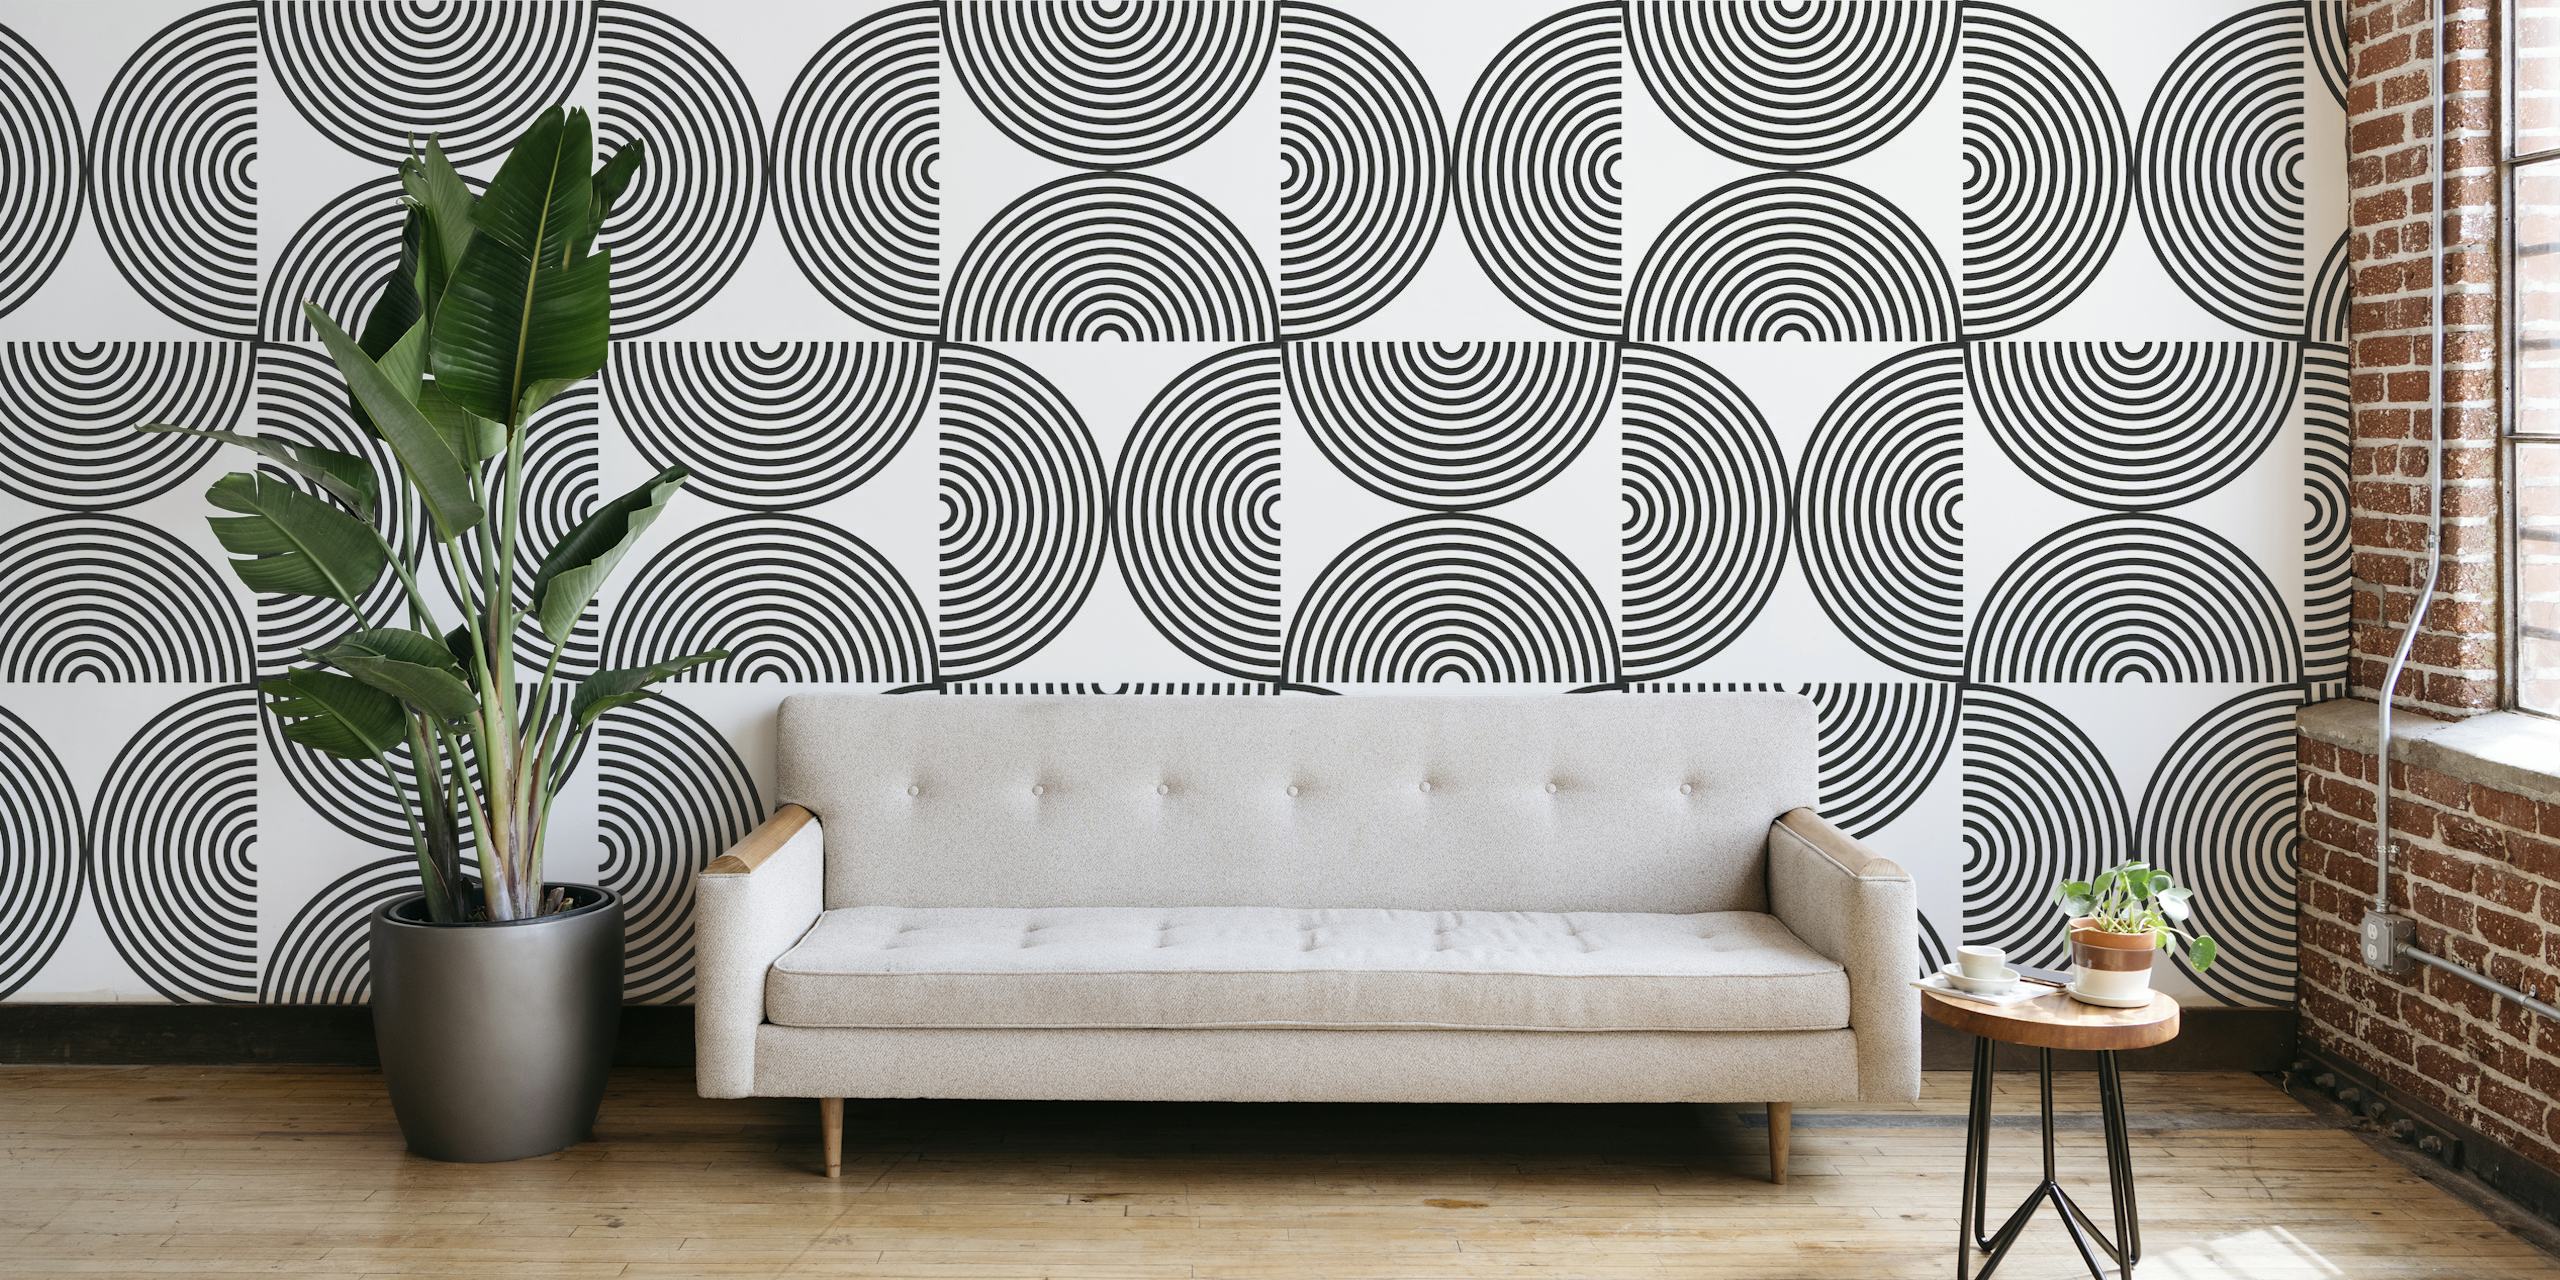 Fotomural vinílico de parede com padrão de linhas e círculos geométricos em tons de cinza